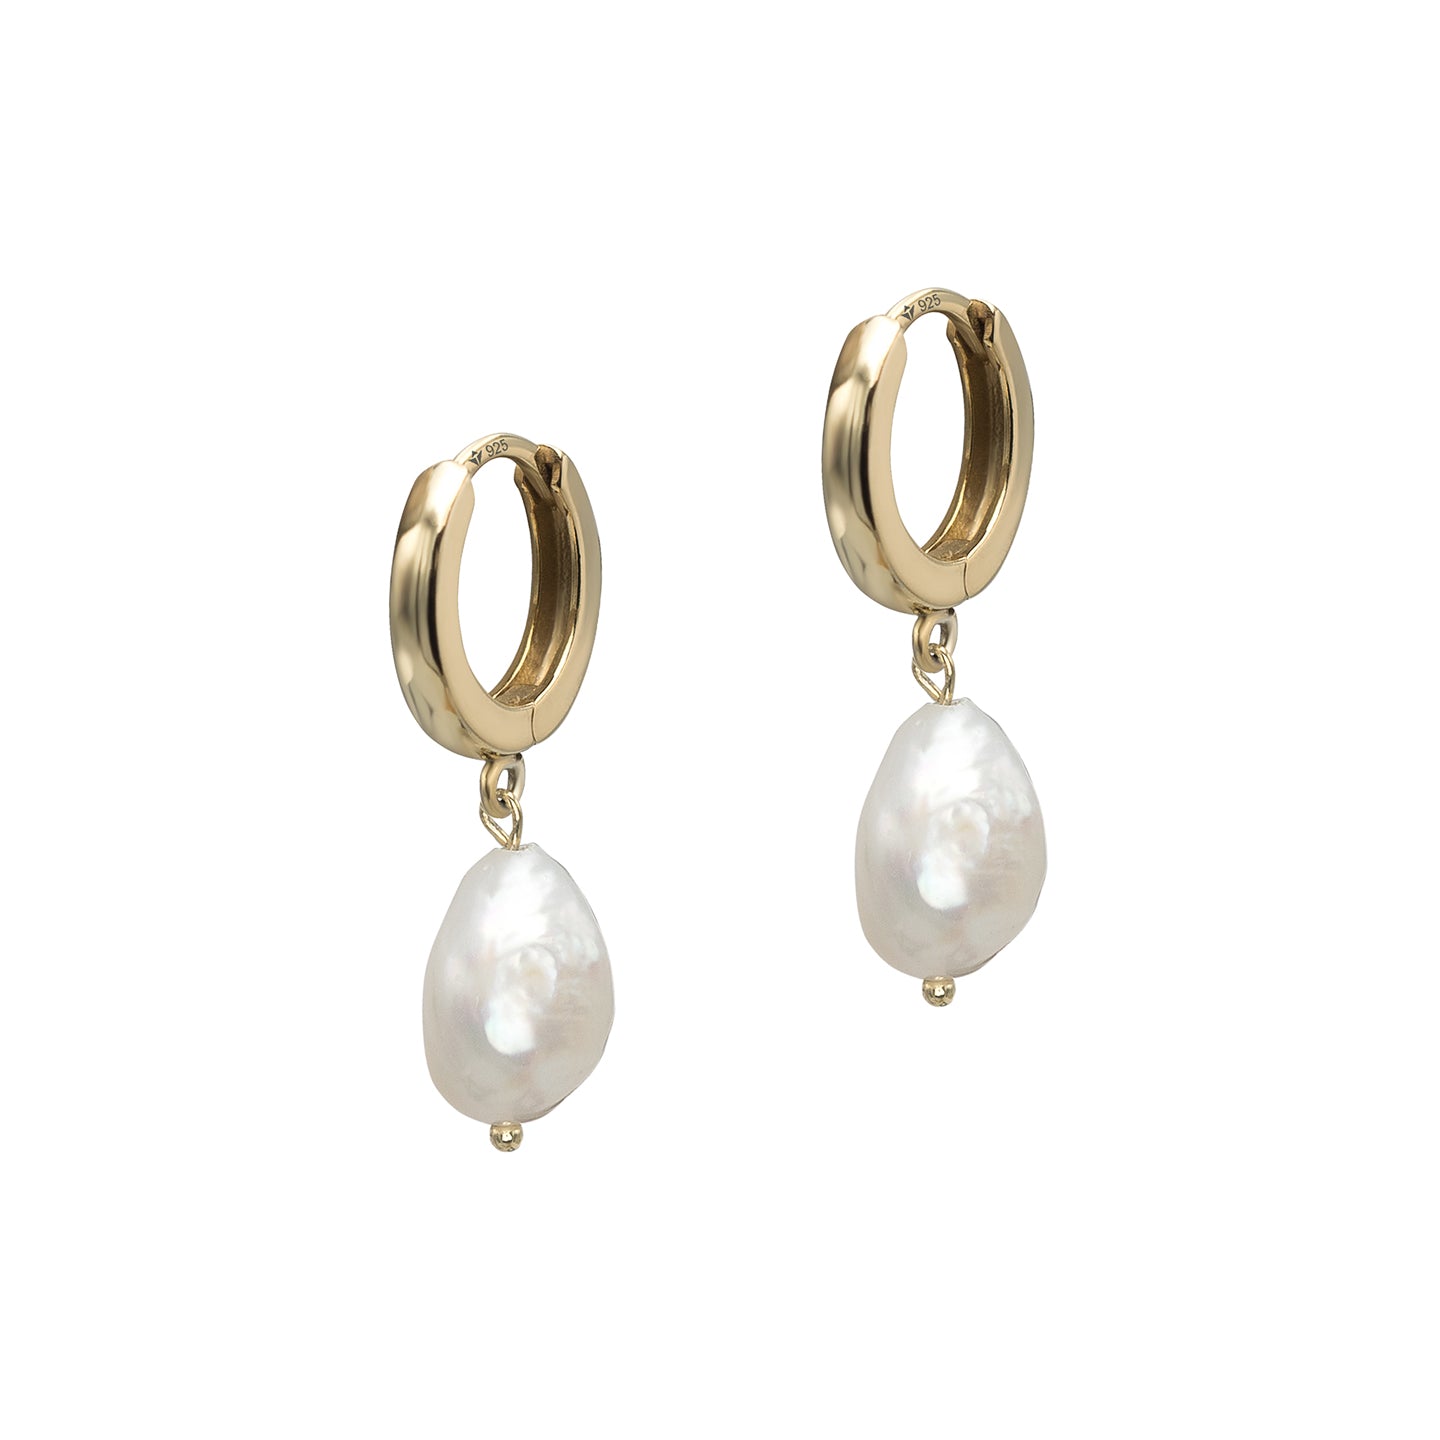 Cercei argint cu perla Unreal Beauty - placati aur galben 18K